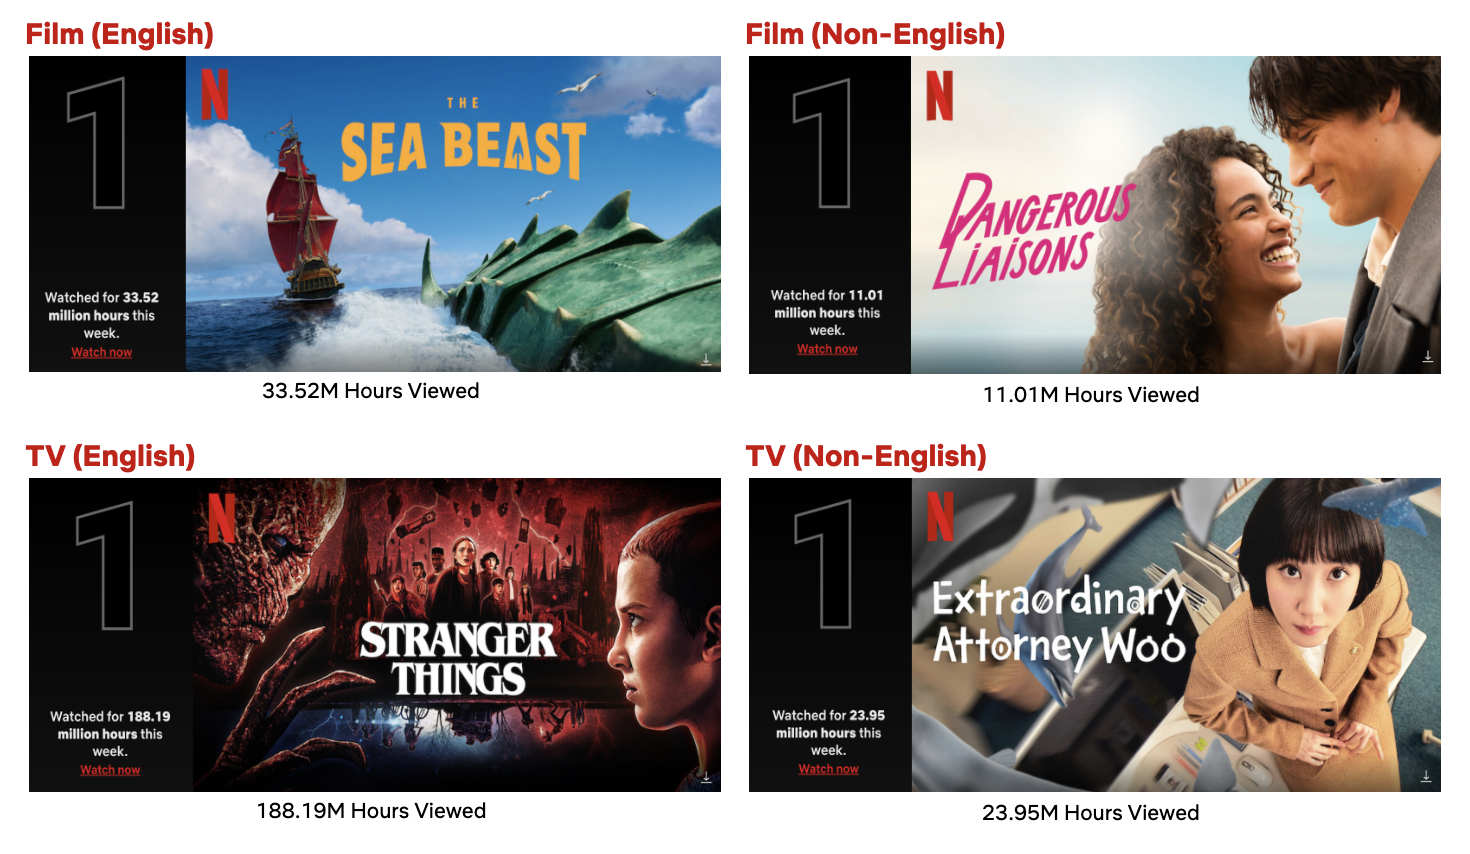 Os 34 Melhores Filmes Nacionais da Netflix - Página 1 - Cinema10